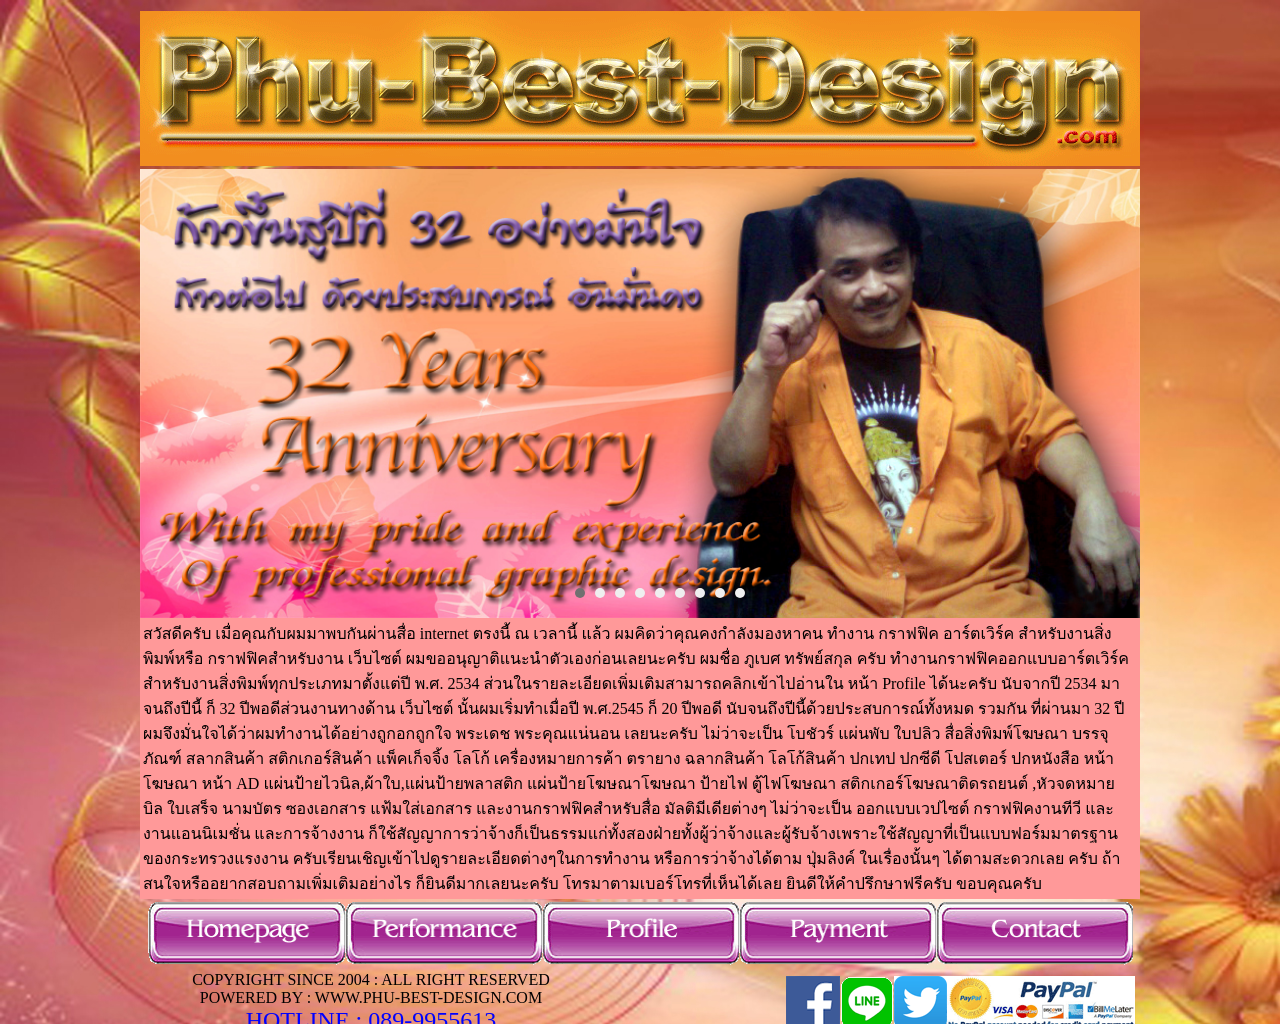 phu-best-design.com